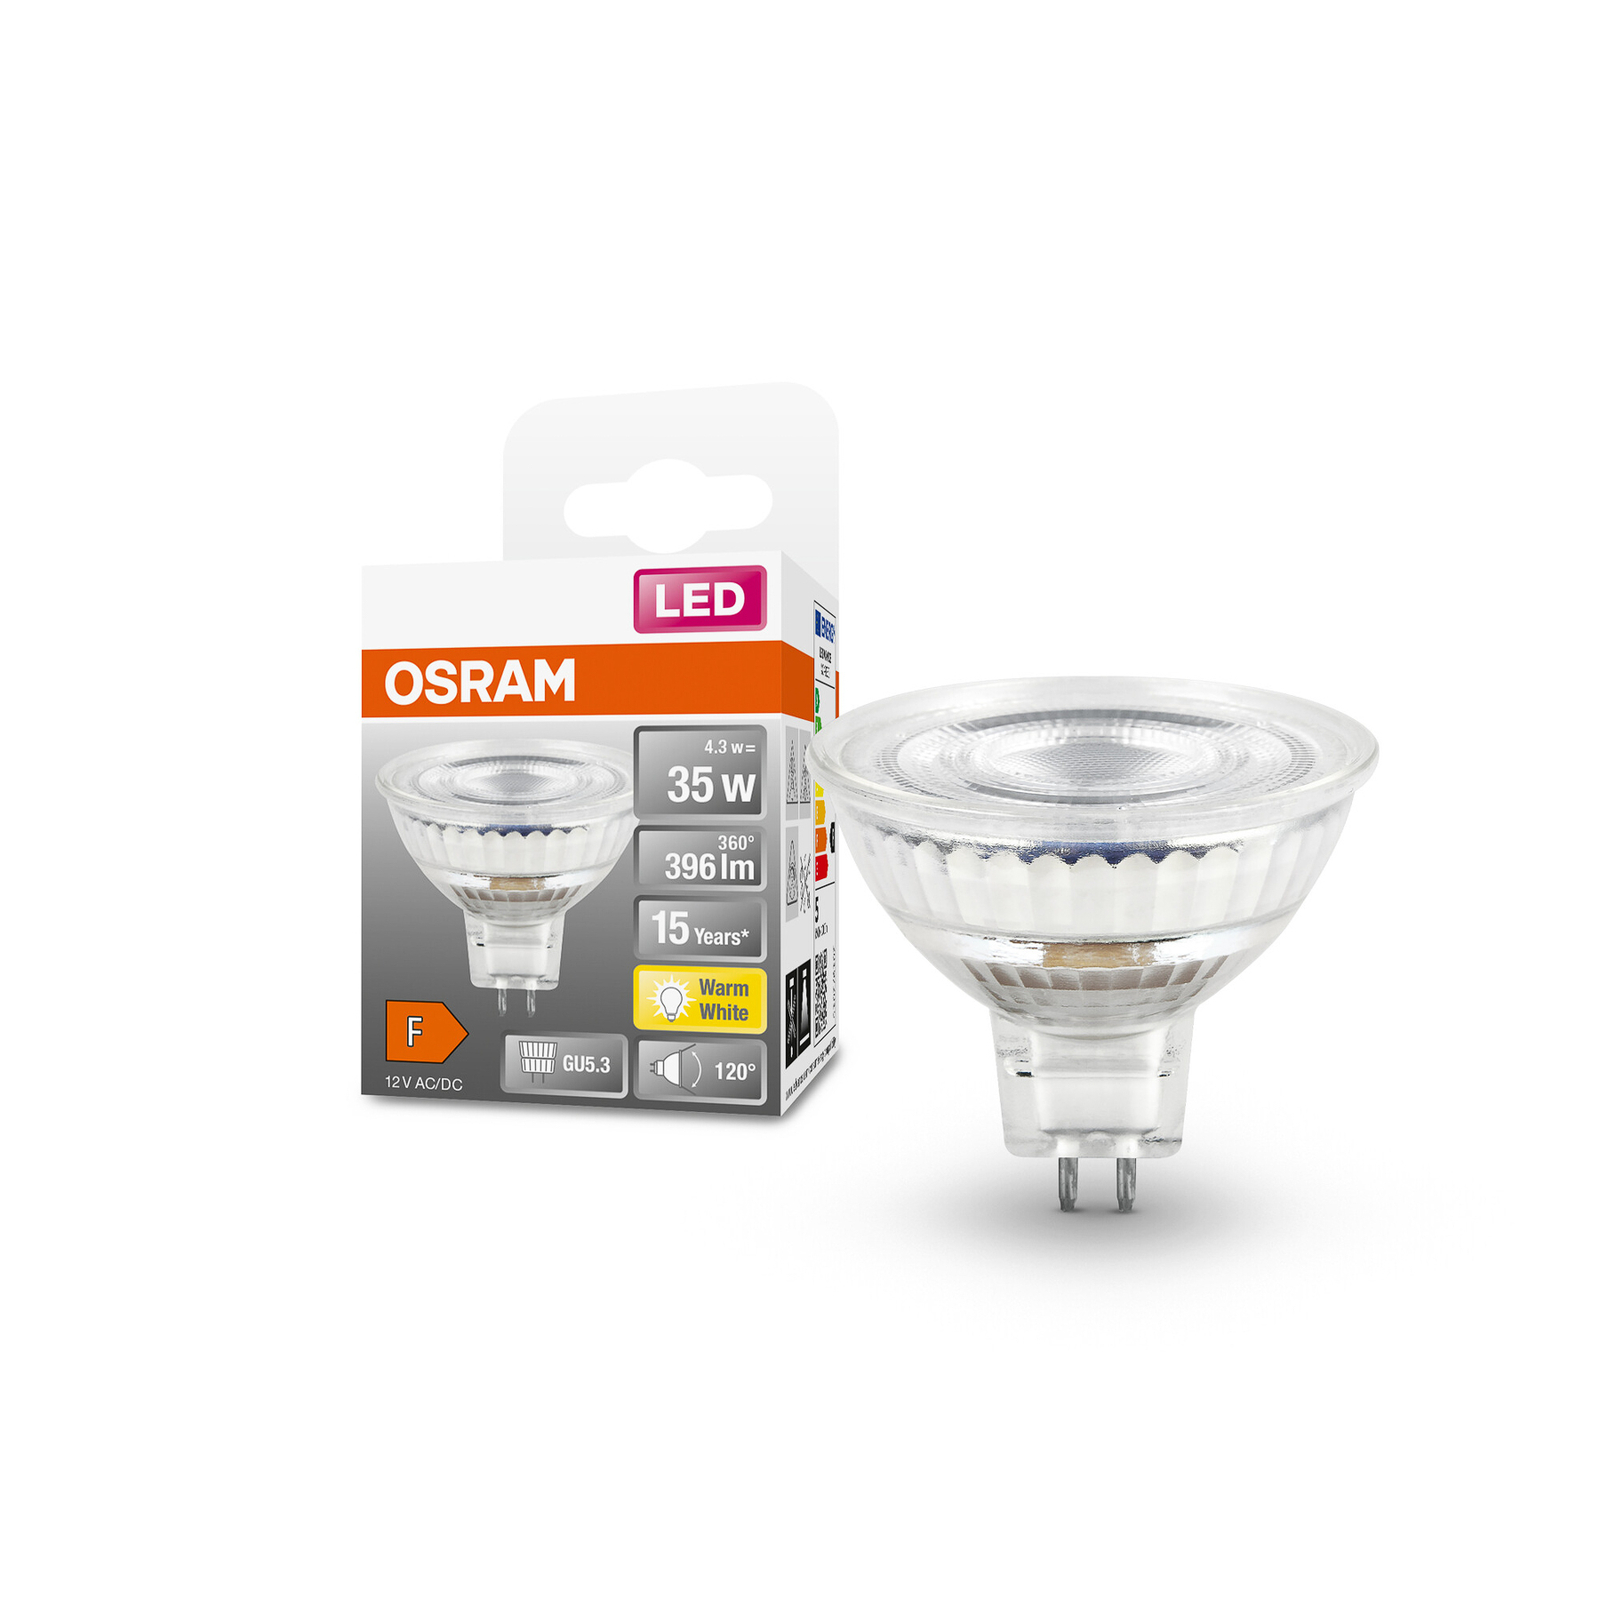 OSRAM LED bulb, GU5.3, 4.3 W, 12 V, 2,700 K, 120°